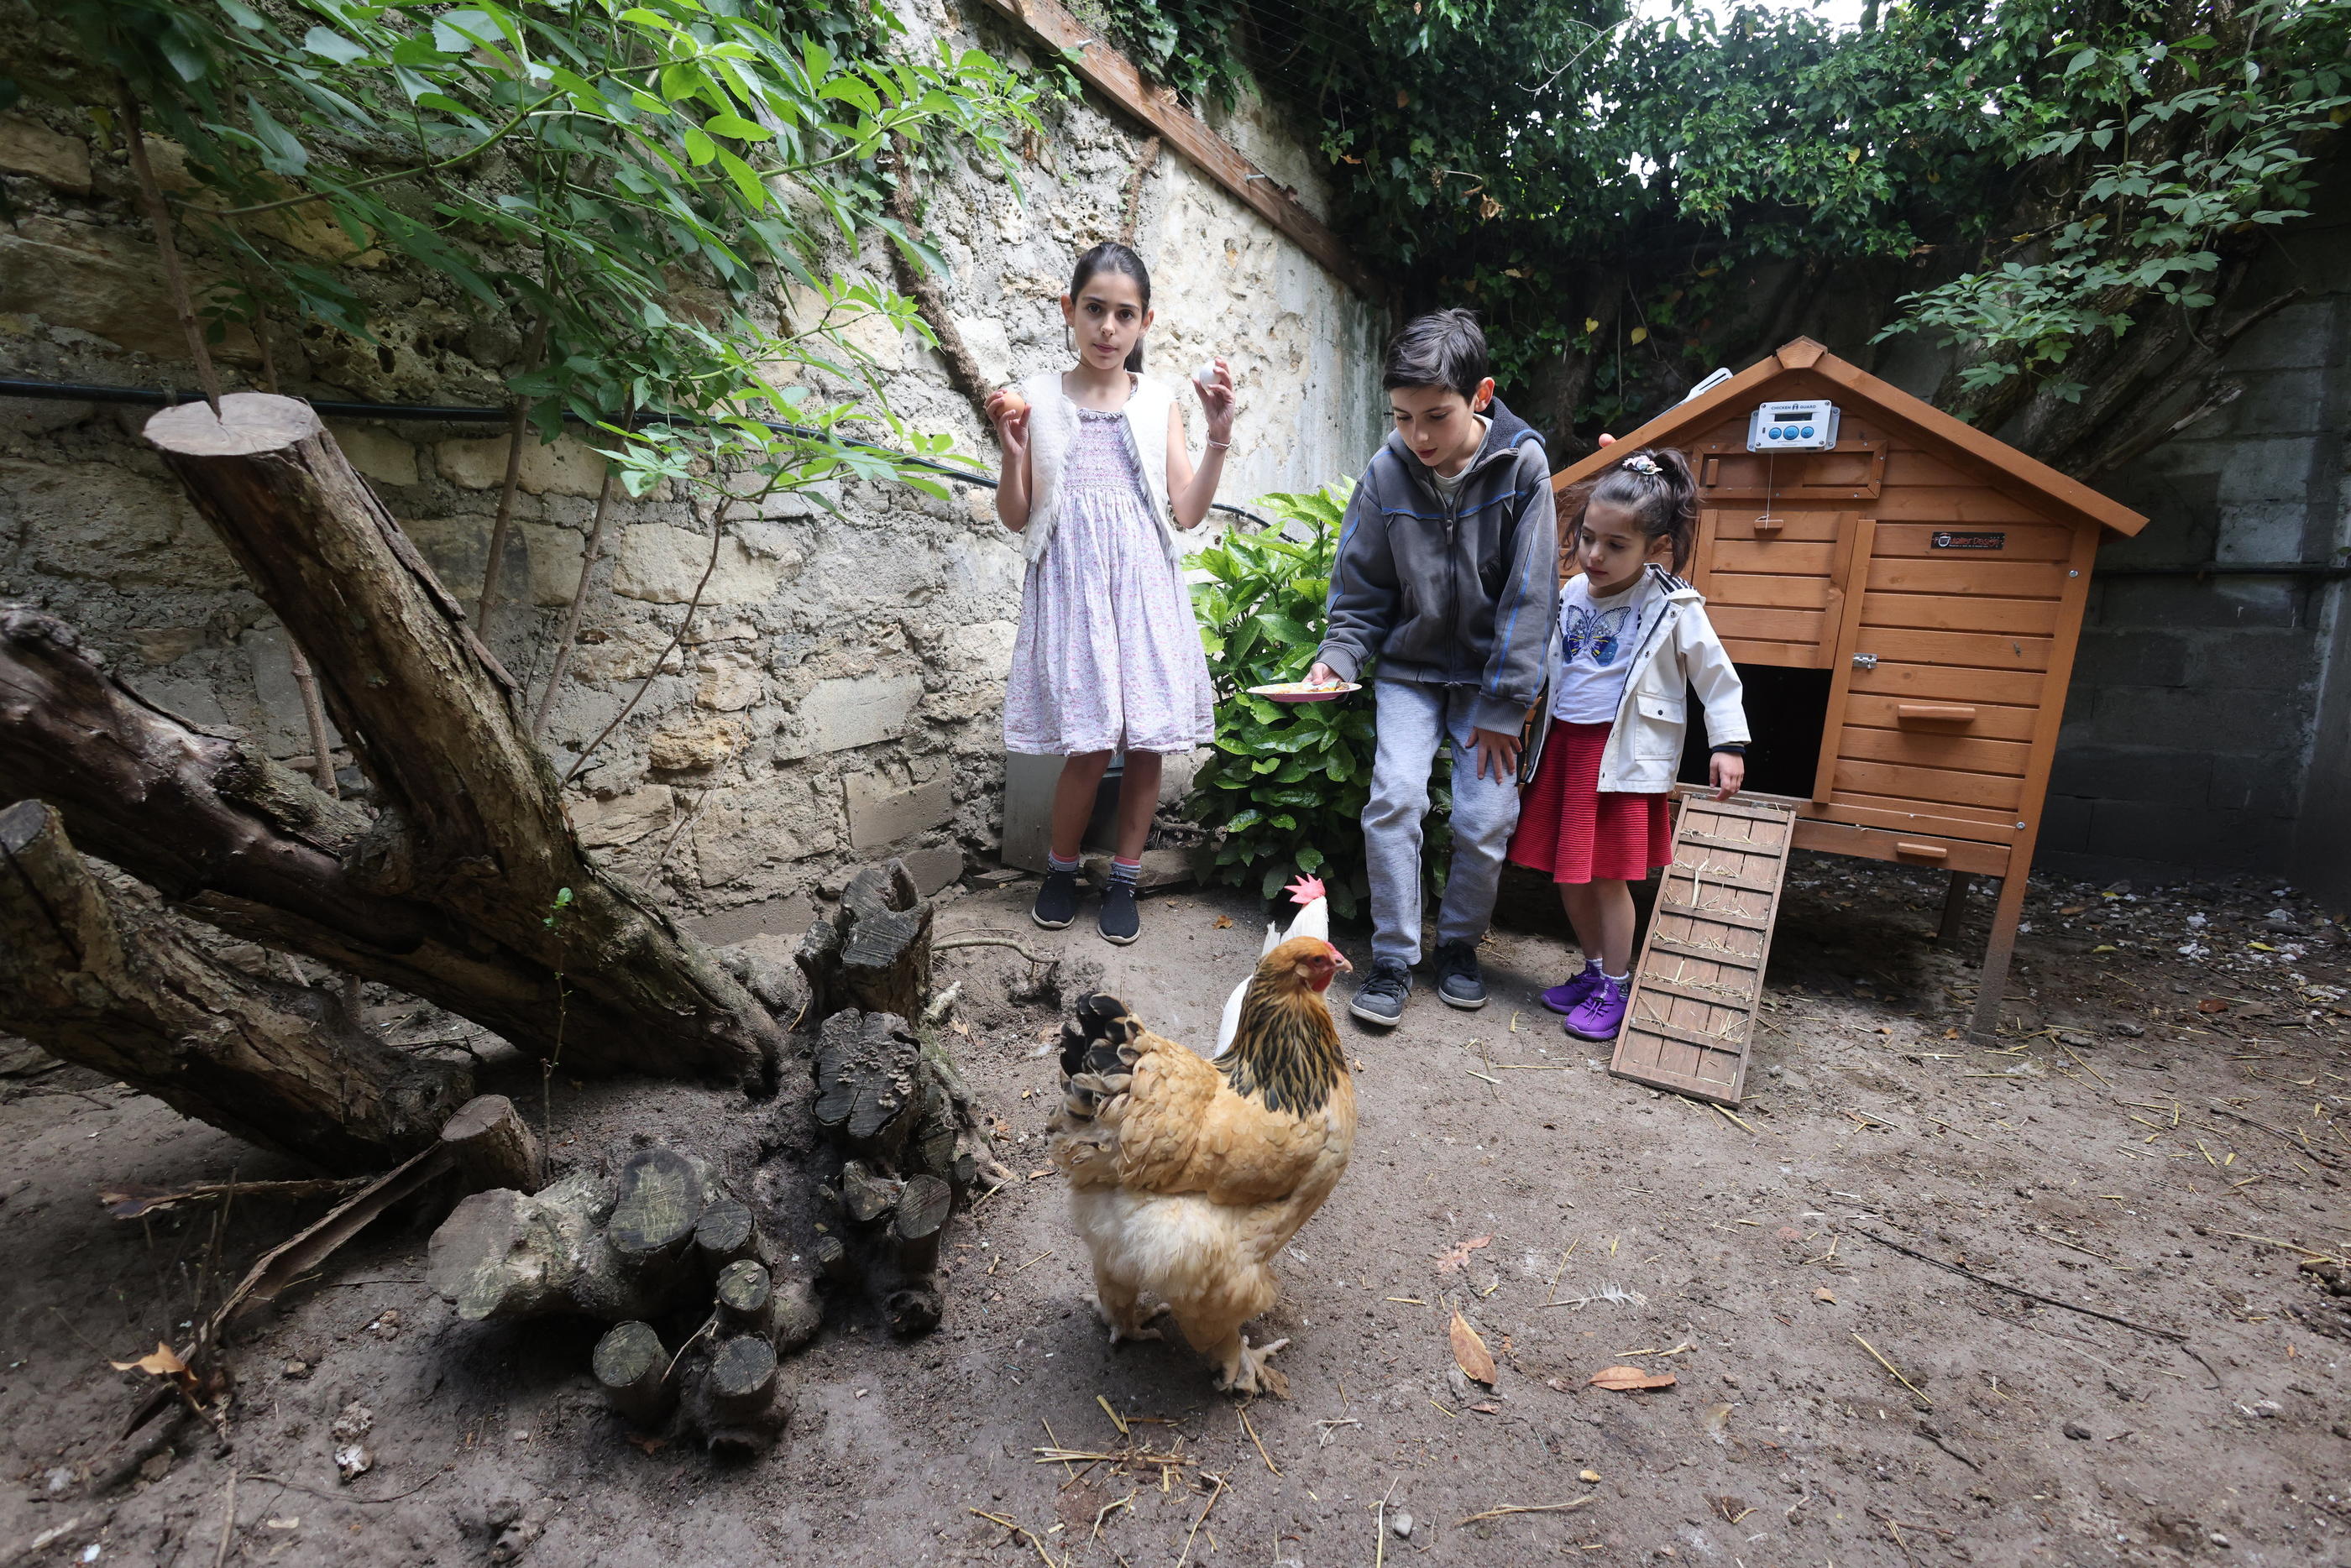 Elever des poules dans son jardin : nos conseils 